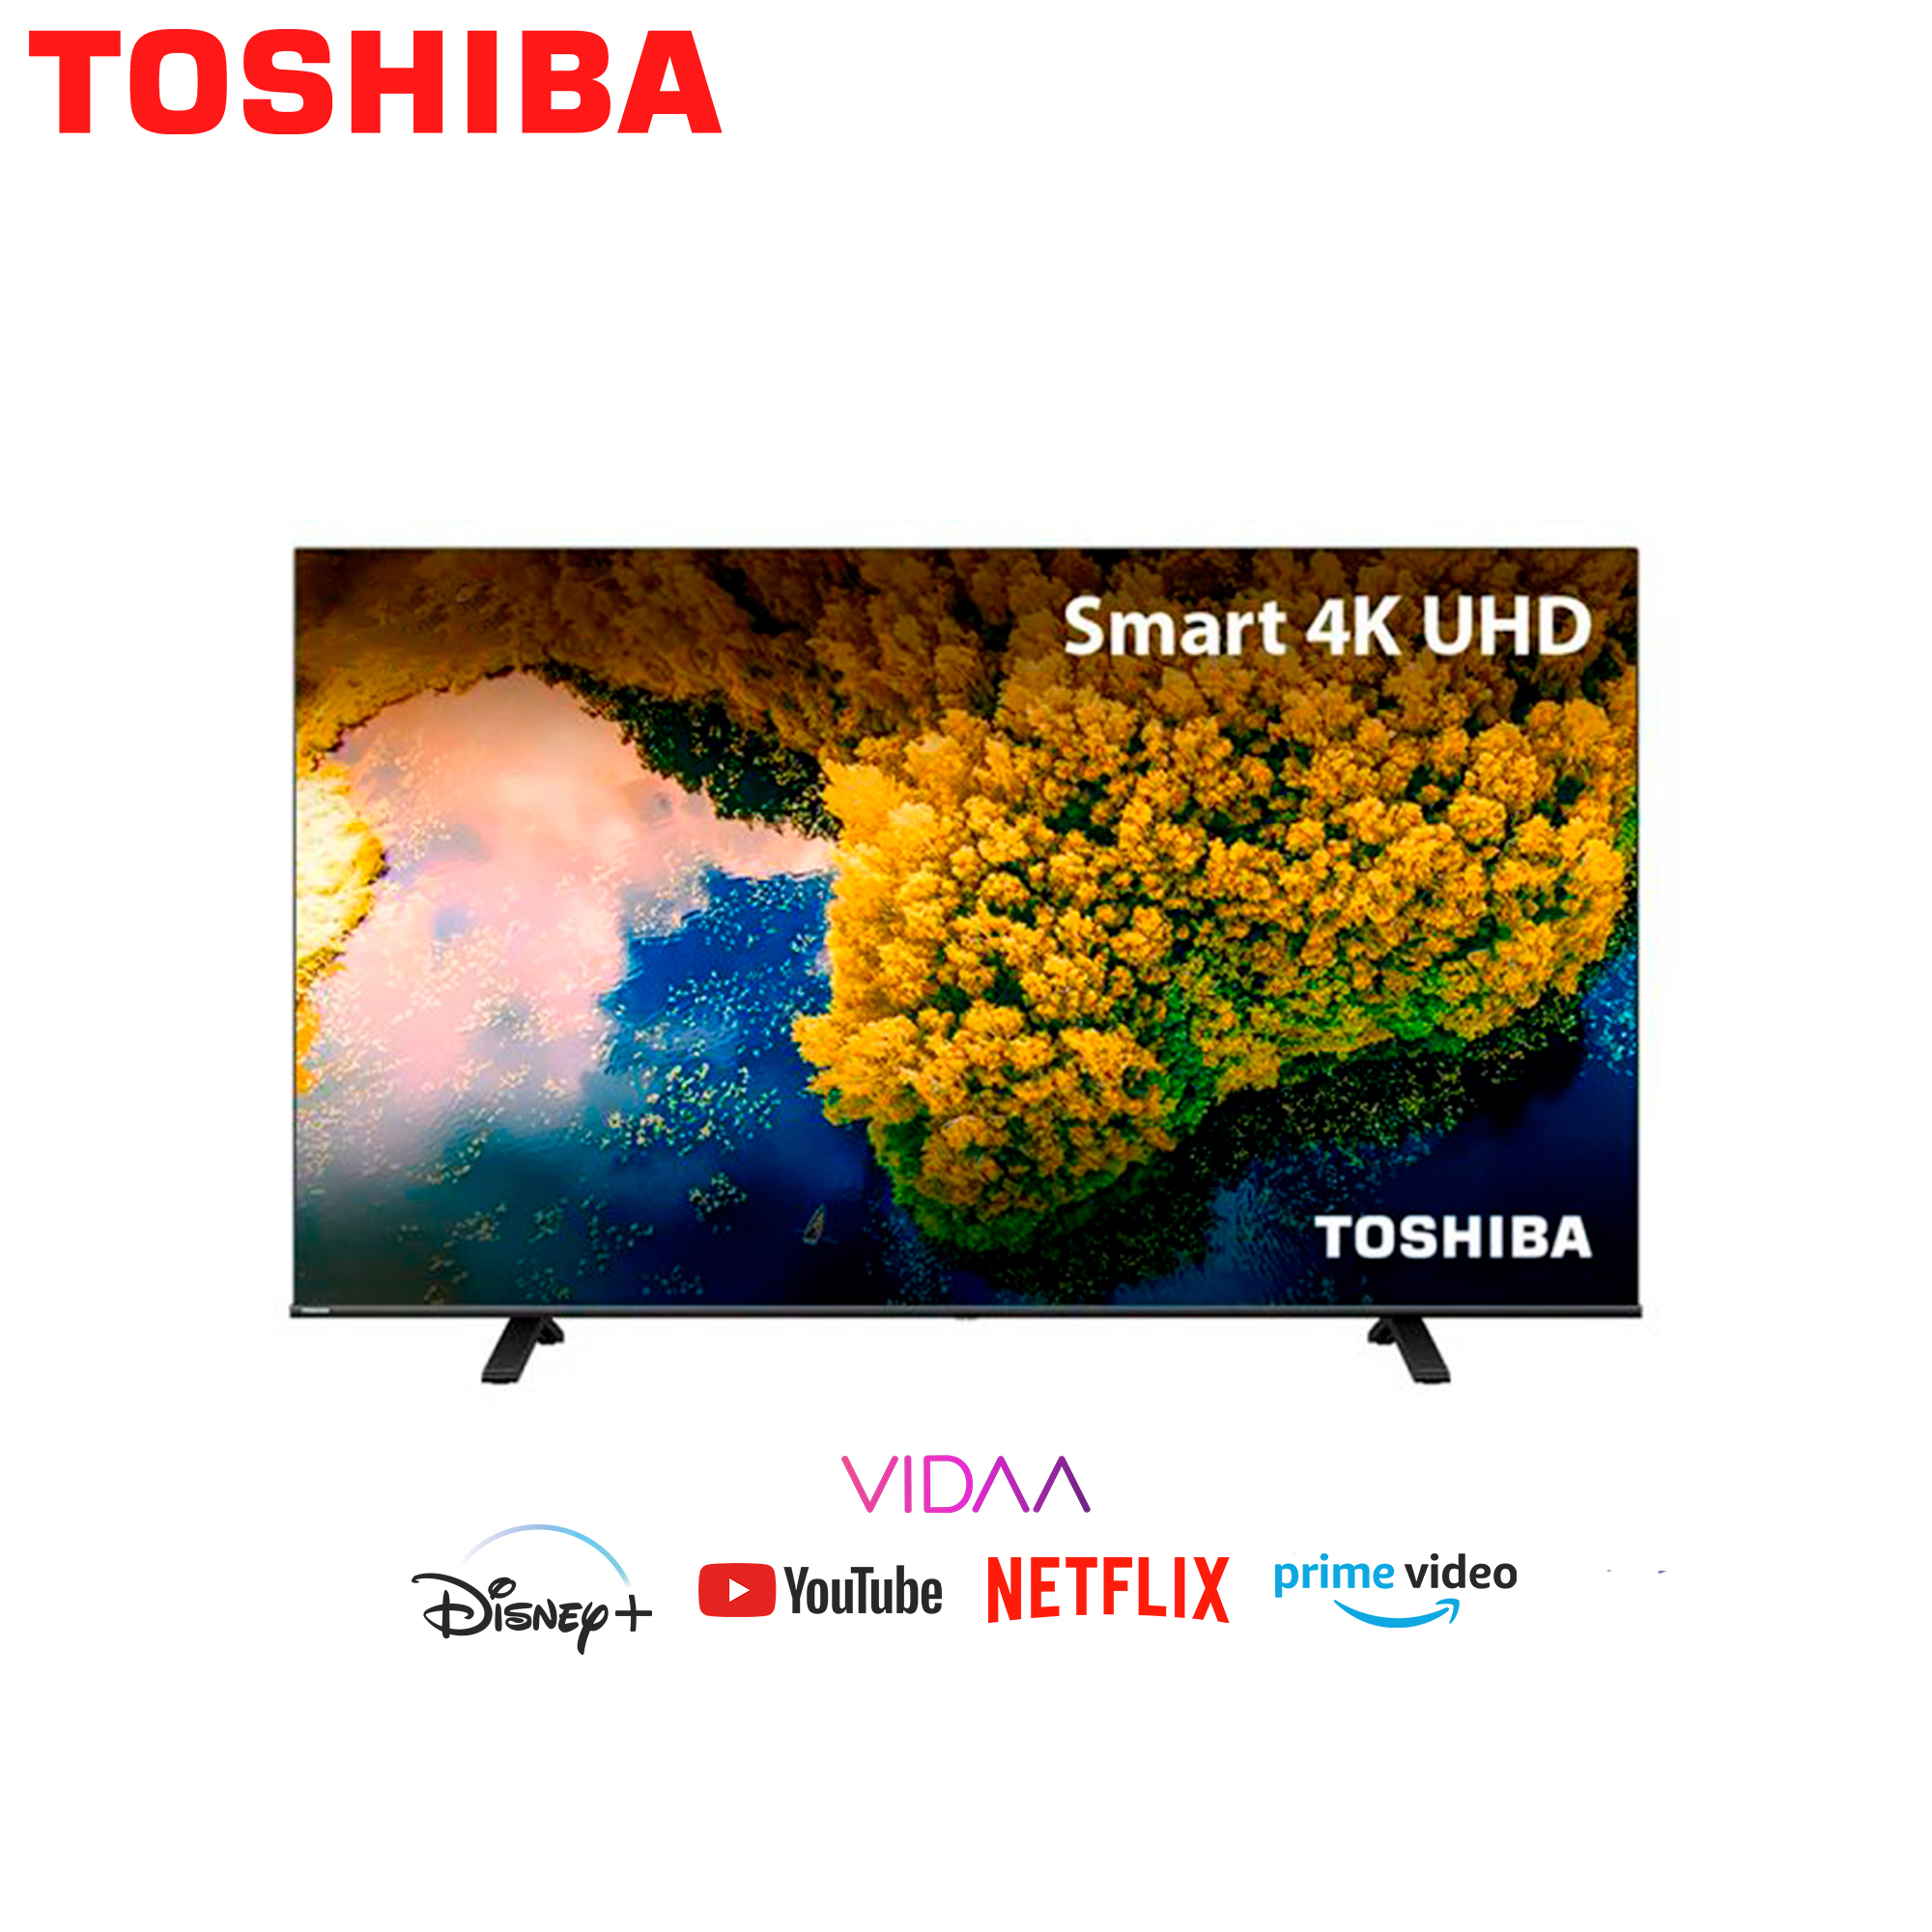 Televisores Toshiba SLIM de pequeñas pulgadas y bajo consumo